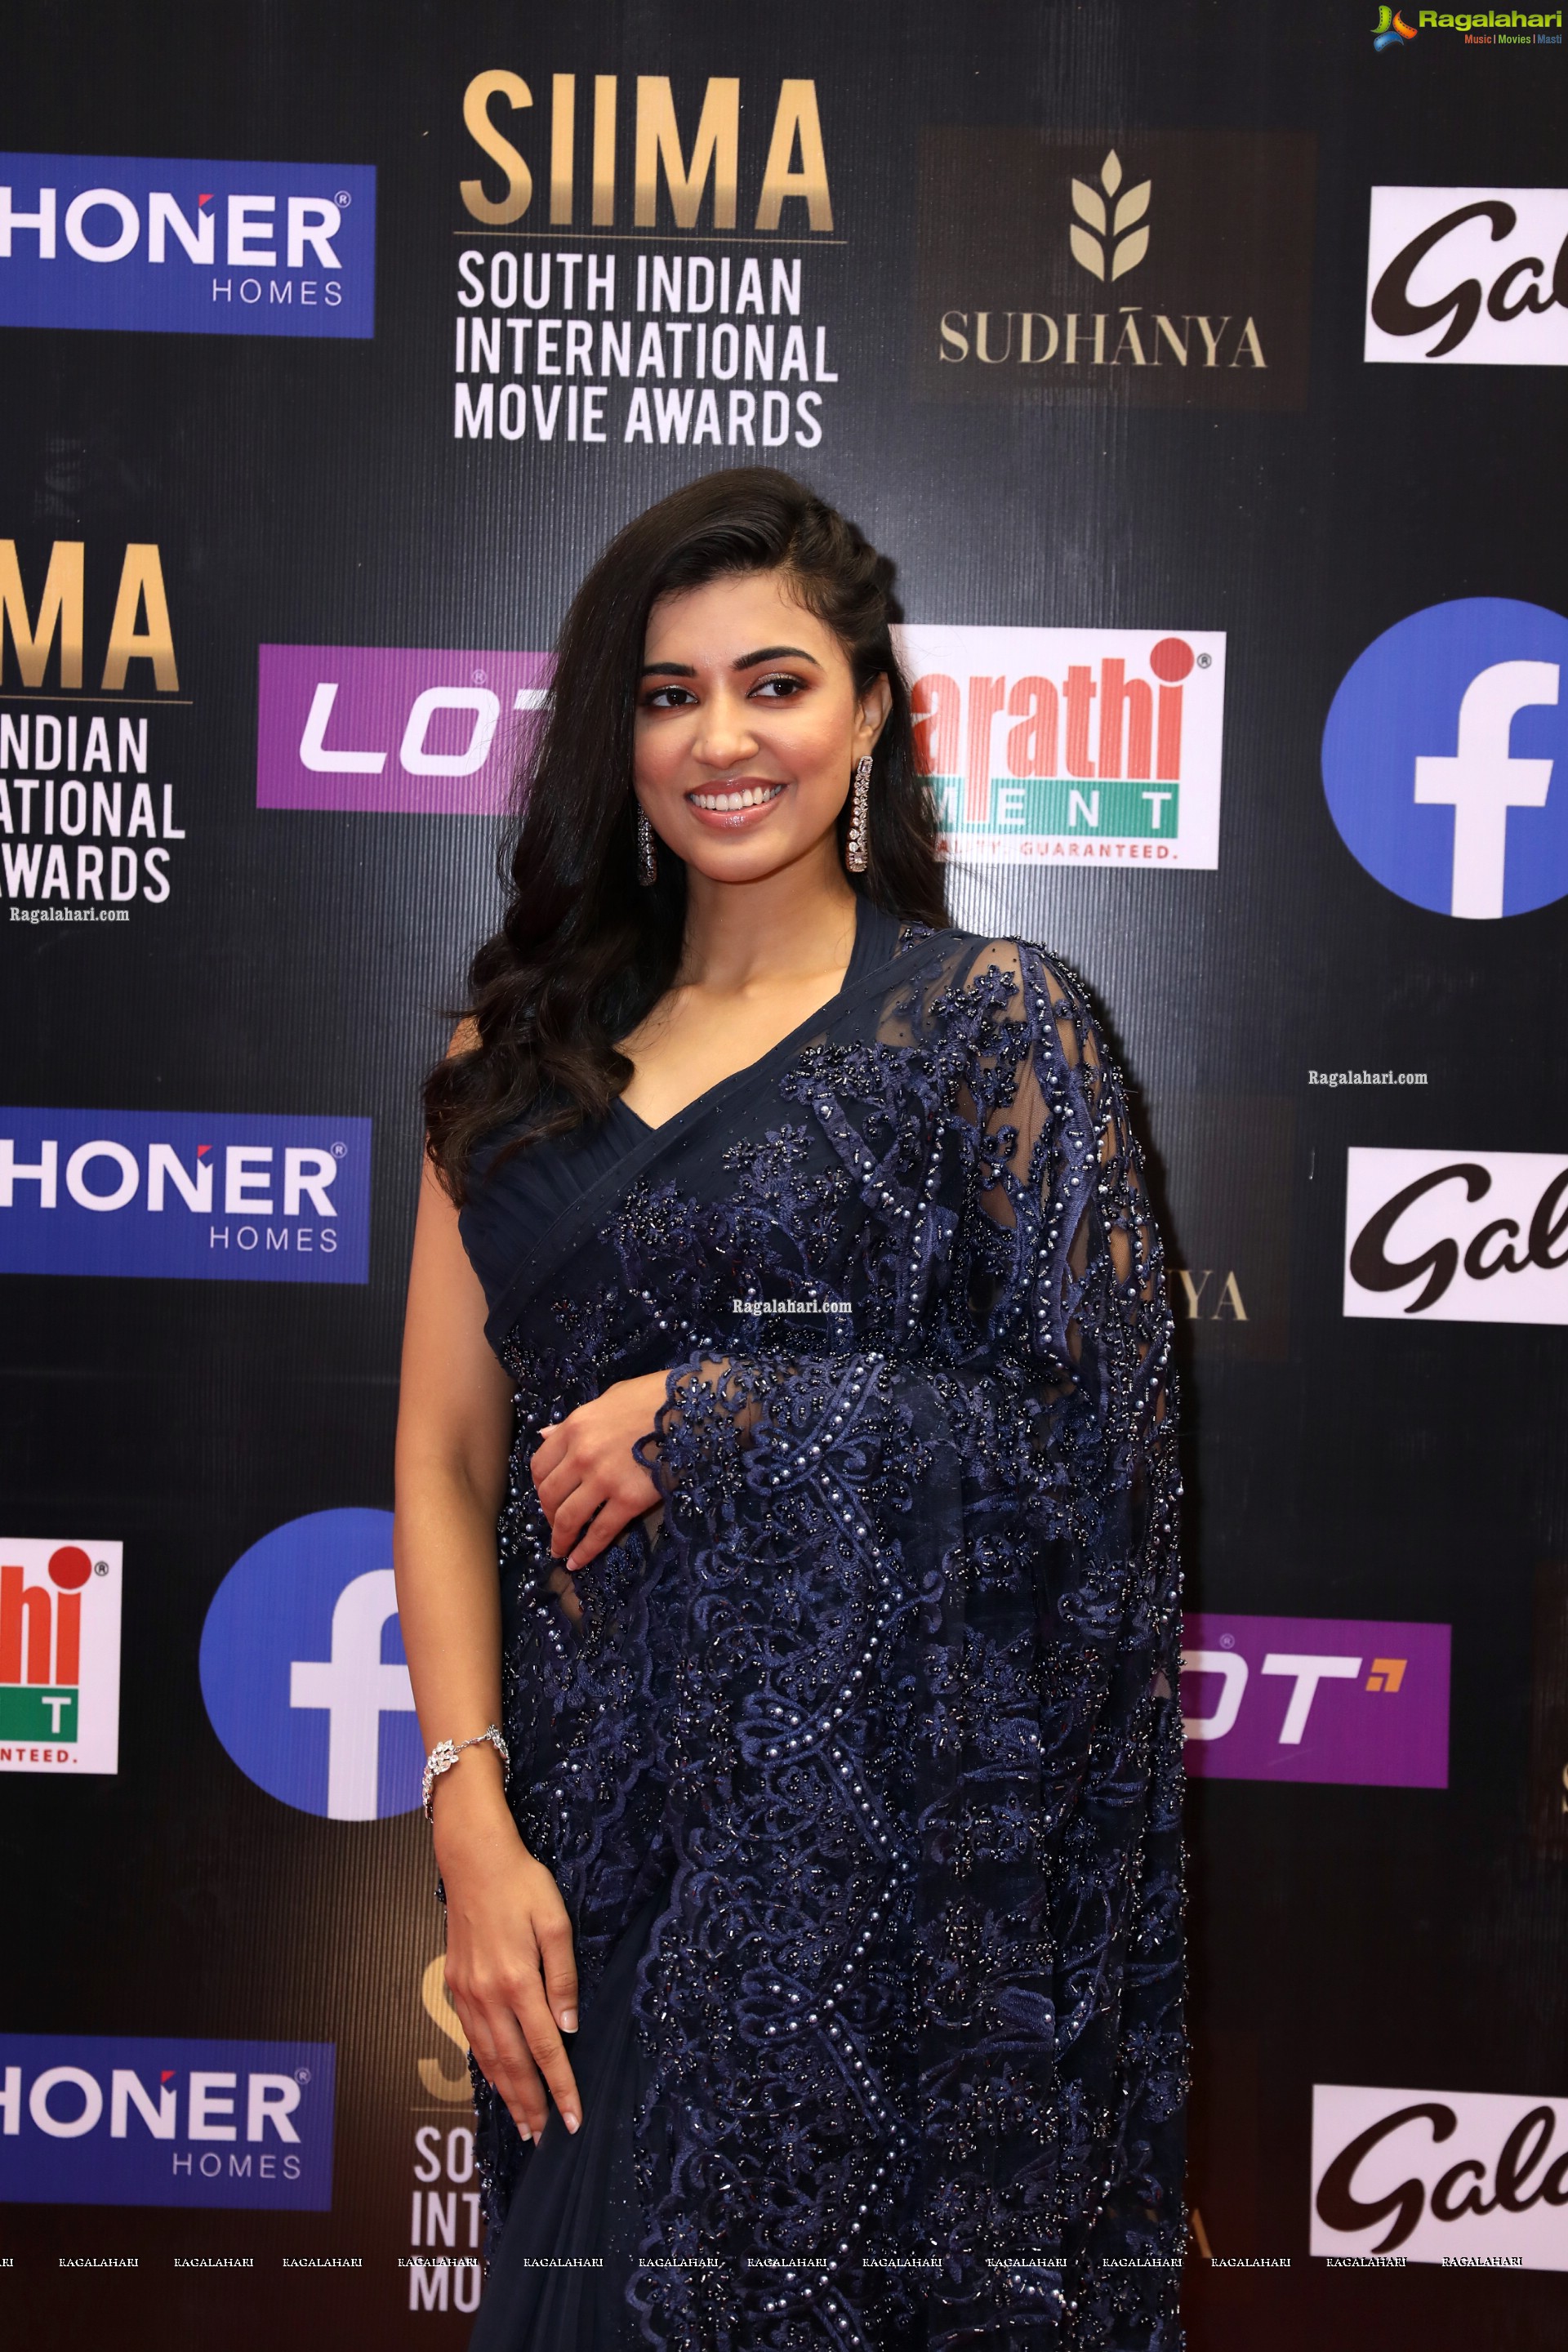 Anju Kurian at SIIMA Awards 2021 Day 2, HD Photo Gallery